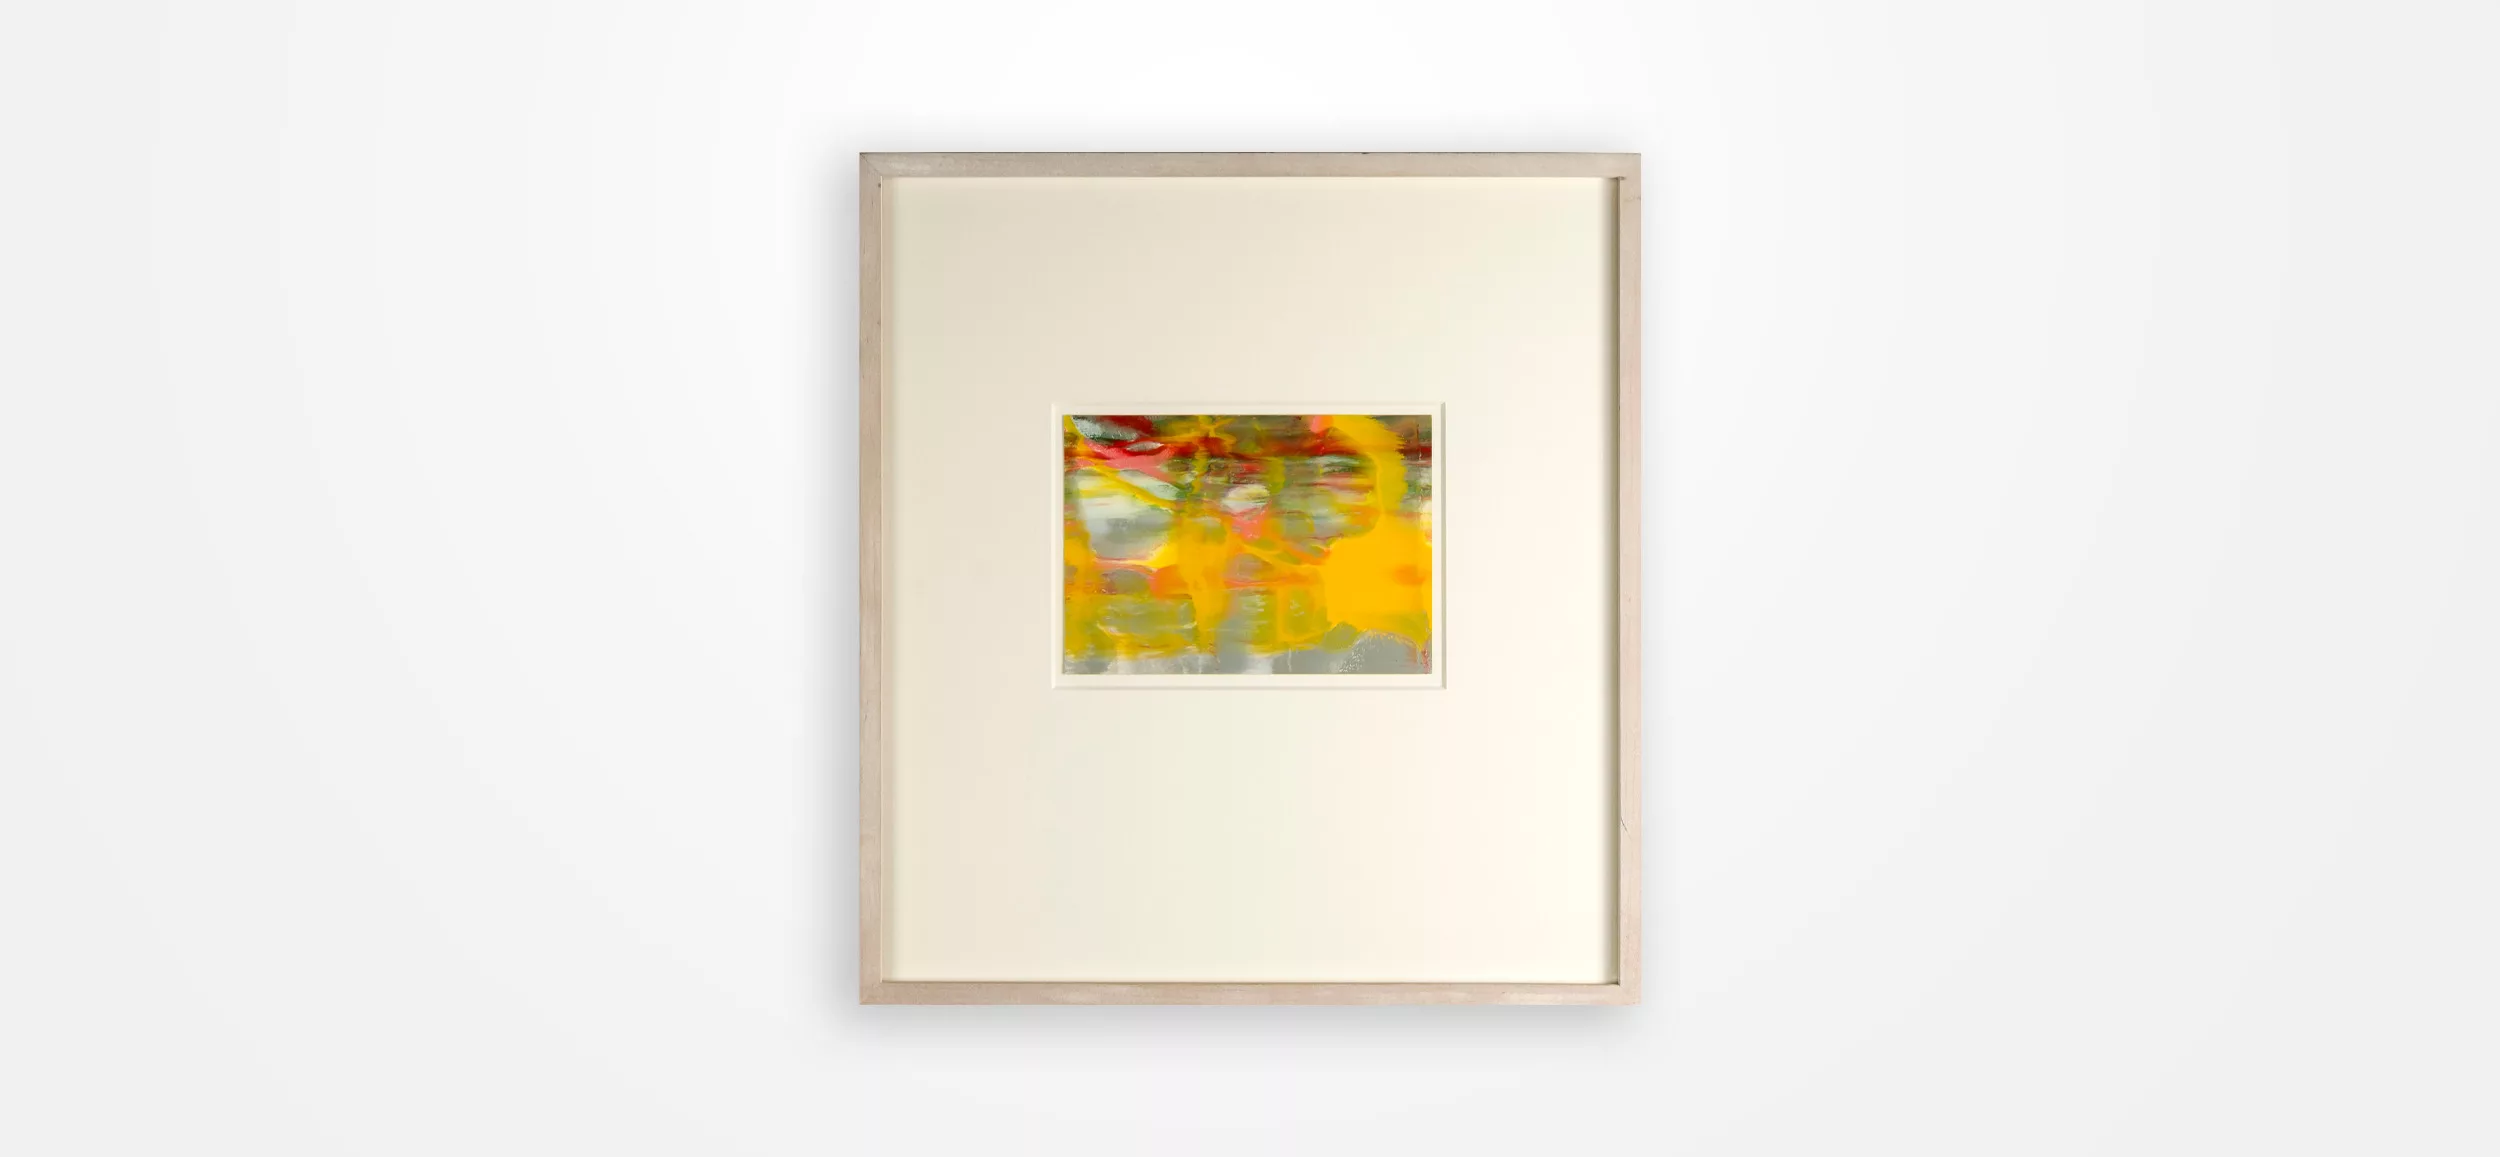 Ein kleines, großes Meisterwerk zur rechten Zeit von Gerhard Richter 